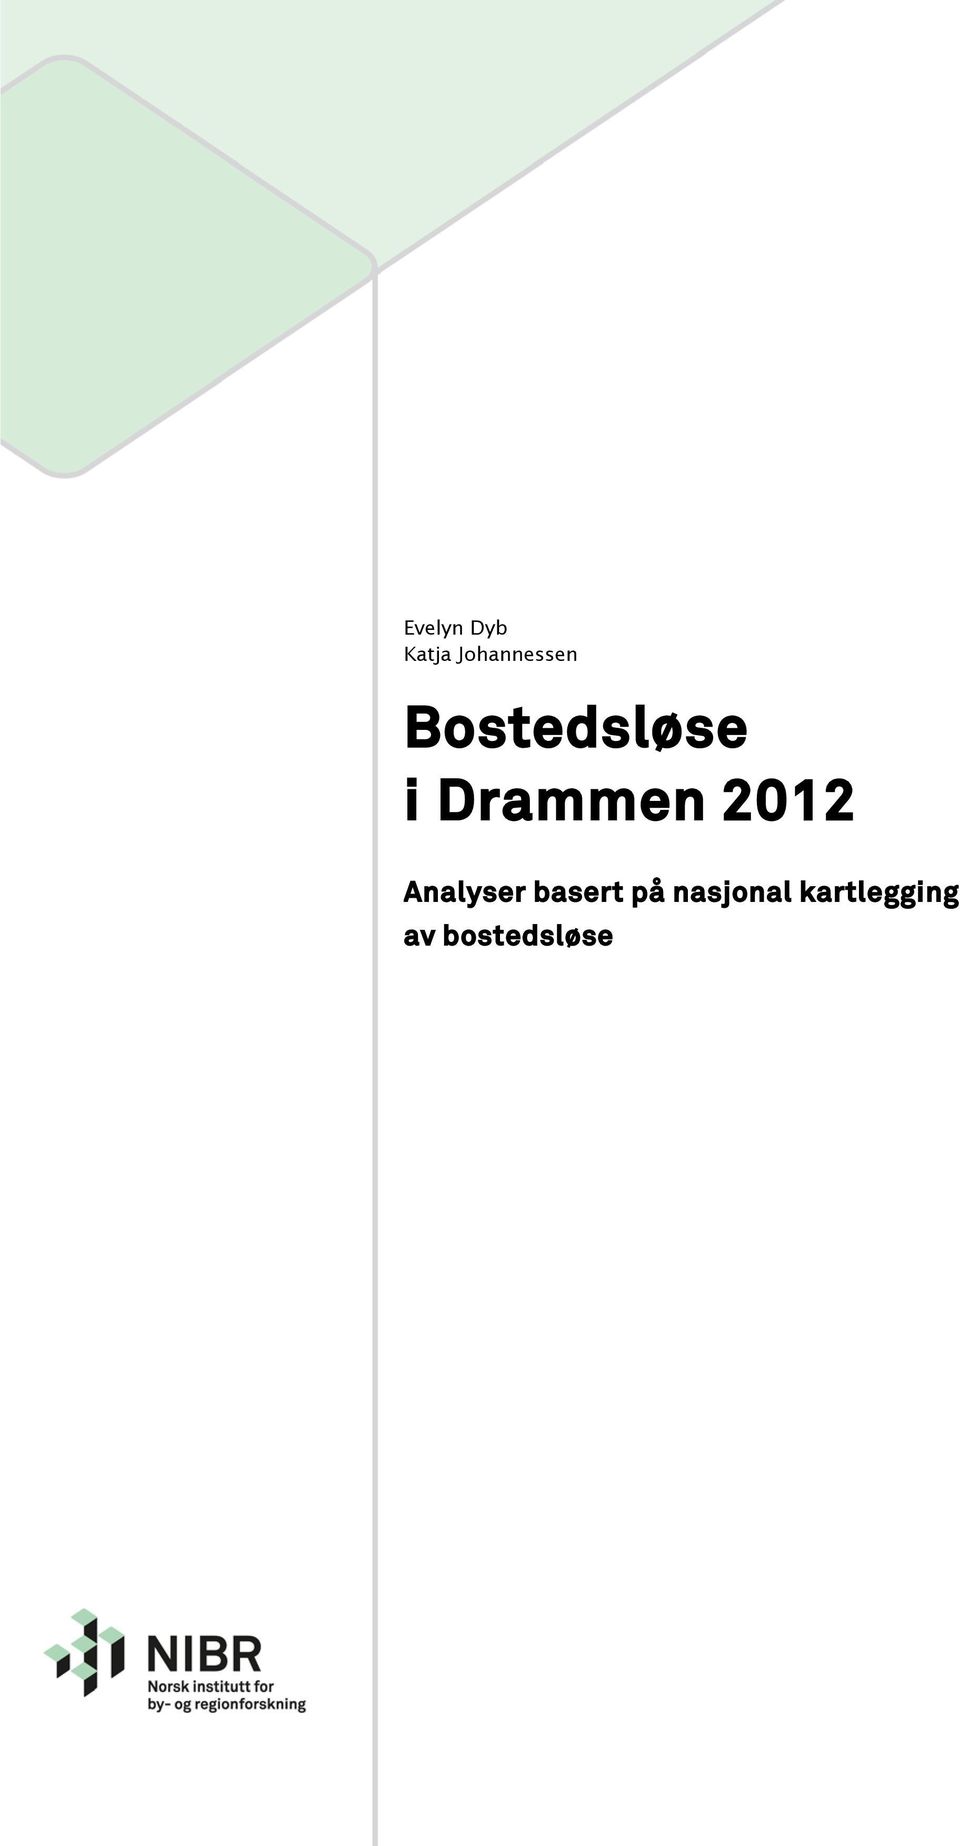 Drammen 2012 Analyser